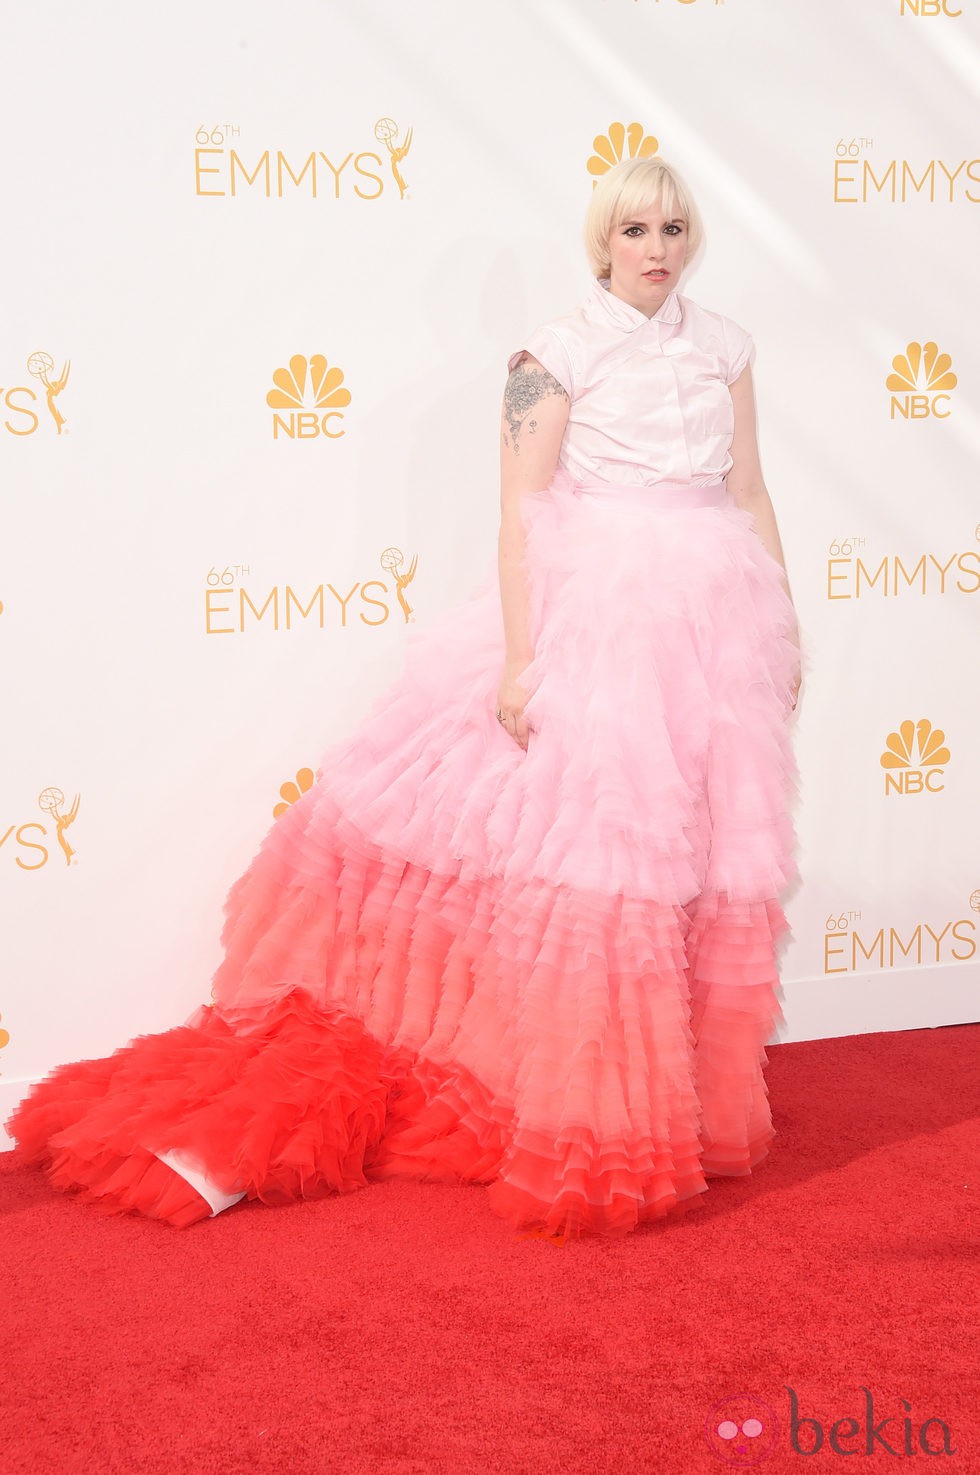 El vestido de Lena Dunham en la alfombra roja de los Emmy 2014